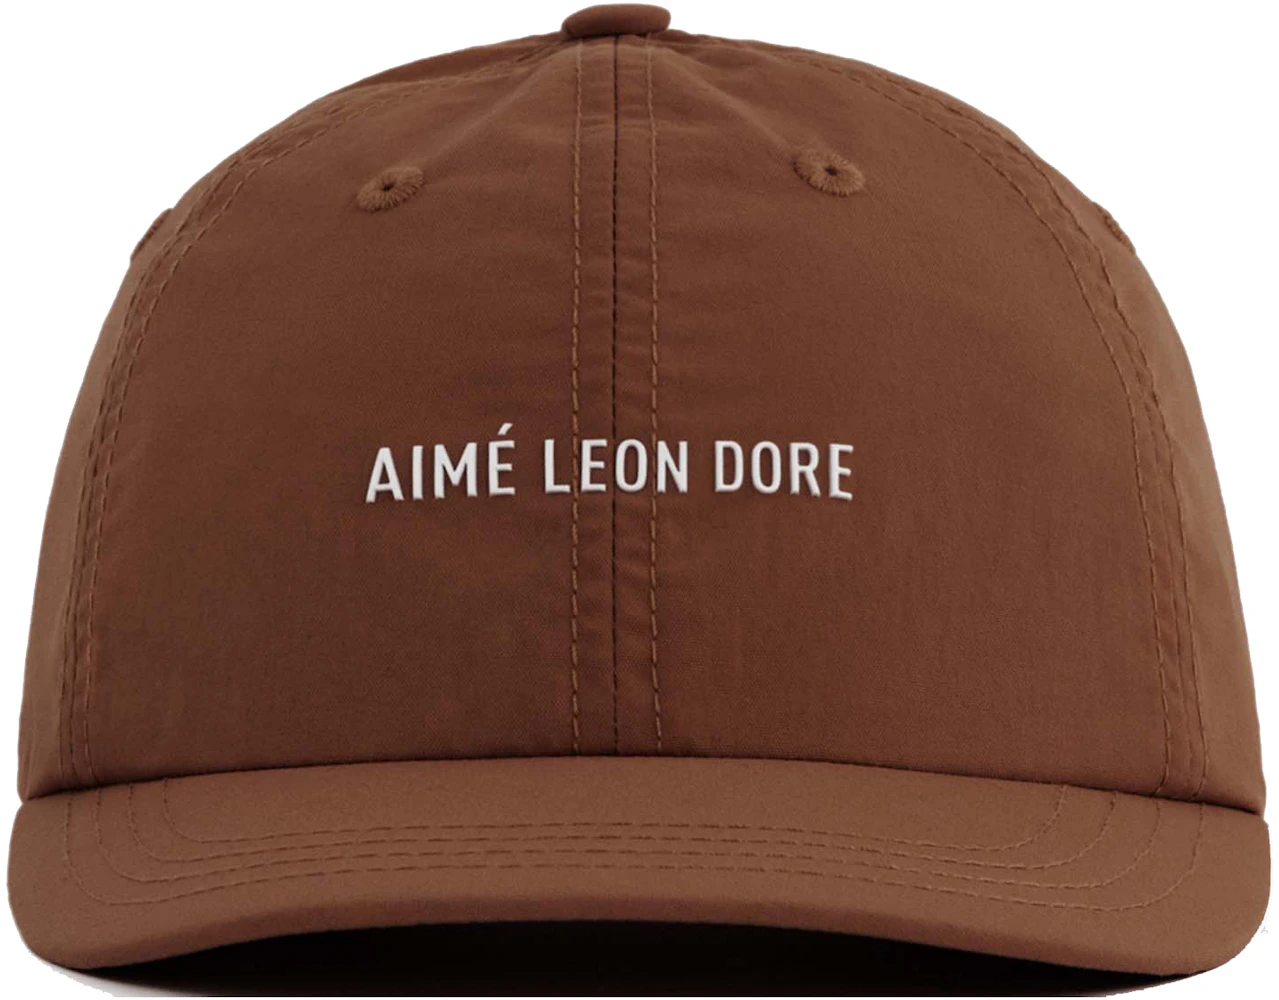 Aime Leon Dore Hat Review 